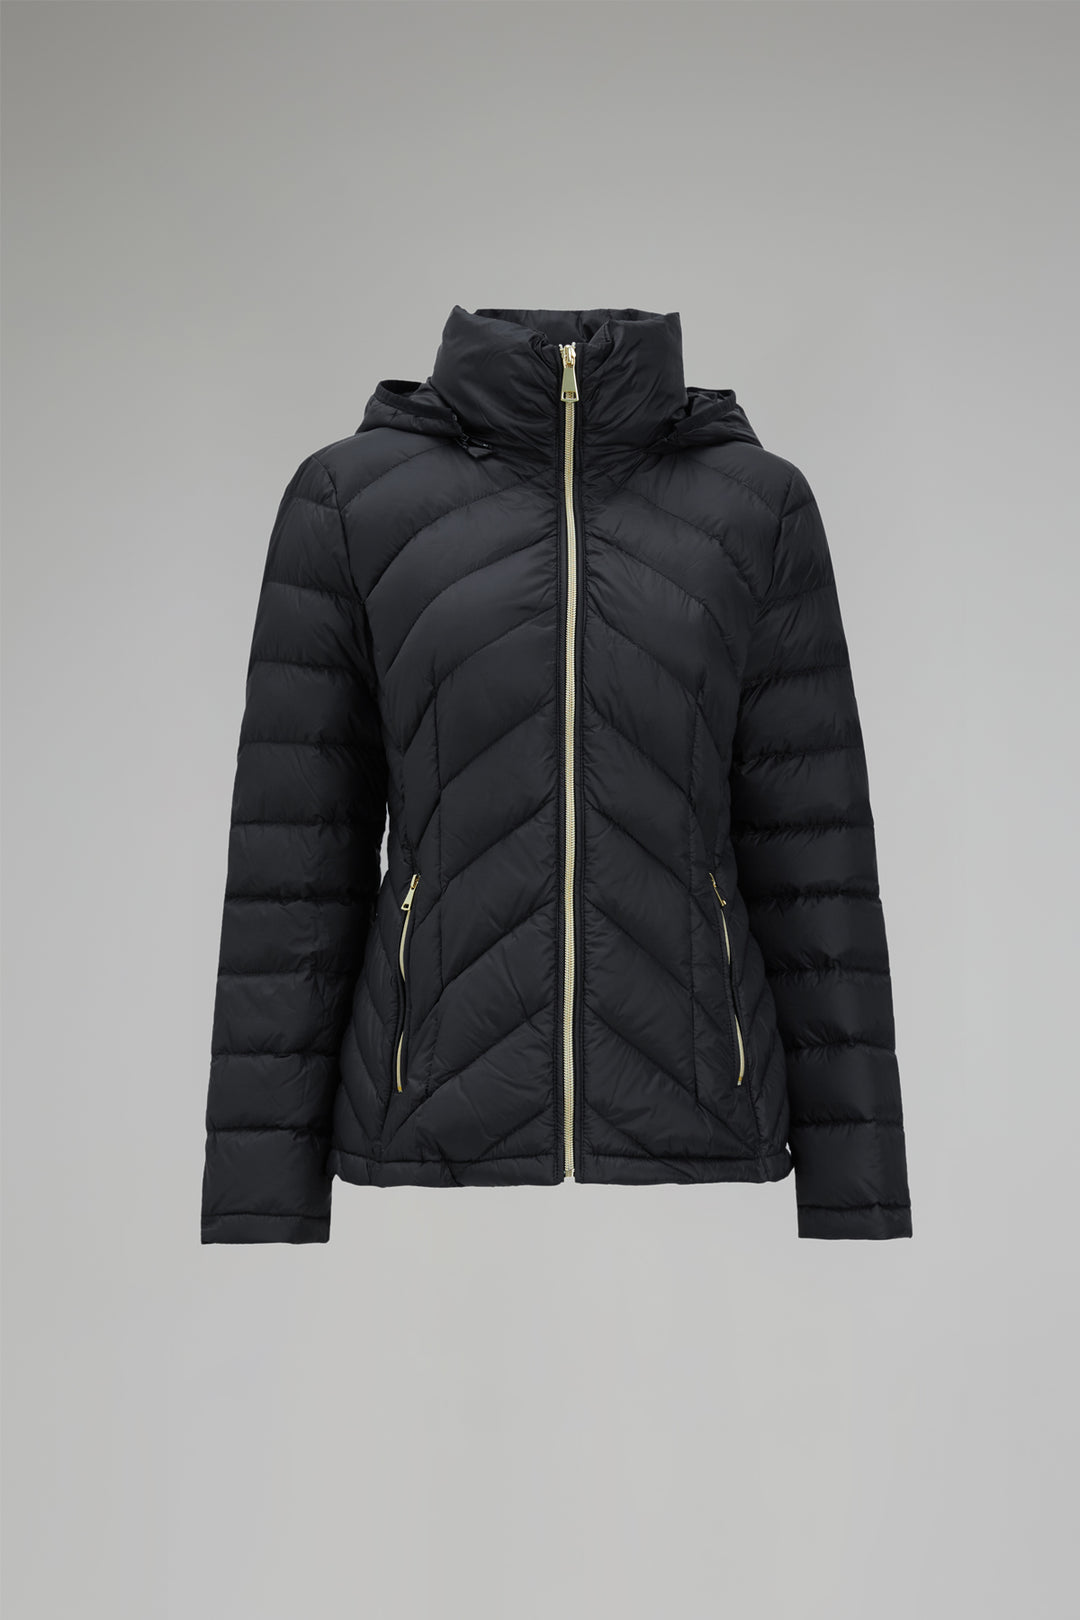 Packable Lightweight Winter Puffer Jacket with hood